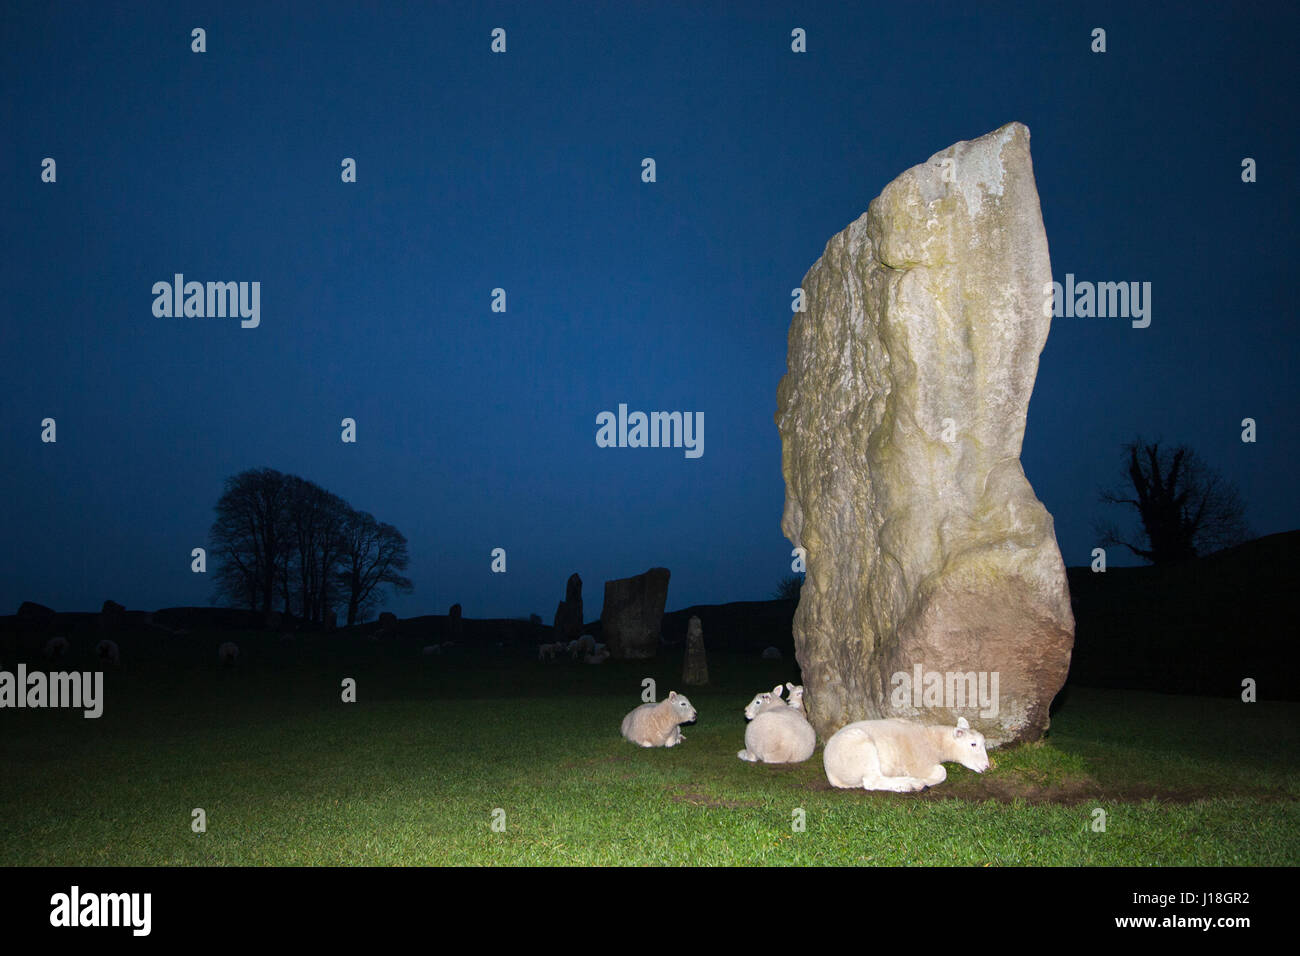 Lämmer, die neben einem riesigen stehenden Stein in Avebury Steinkreis bei Nacht, Wiltshire, England, Großbritannien, Schutz bieten. Ovis aries Stockfoto